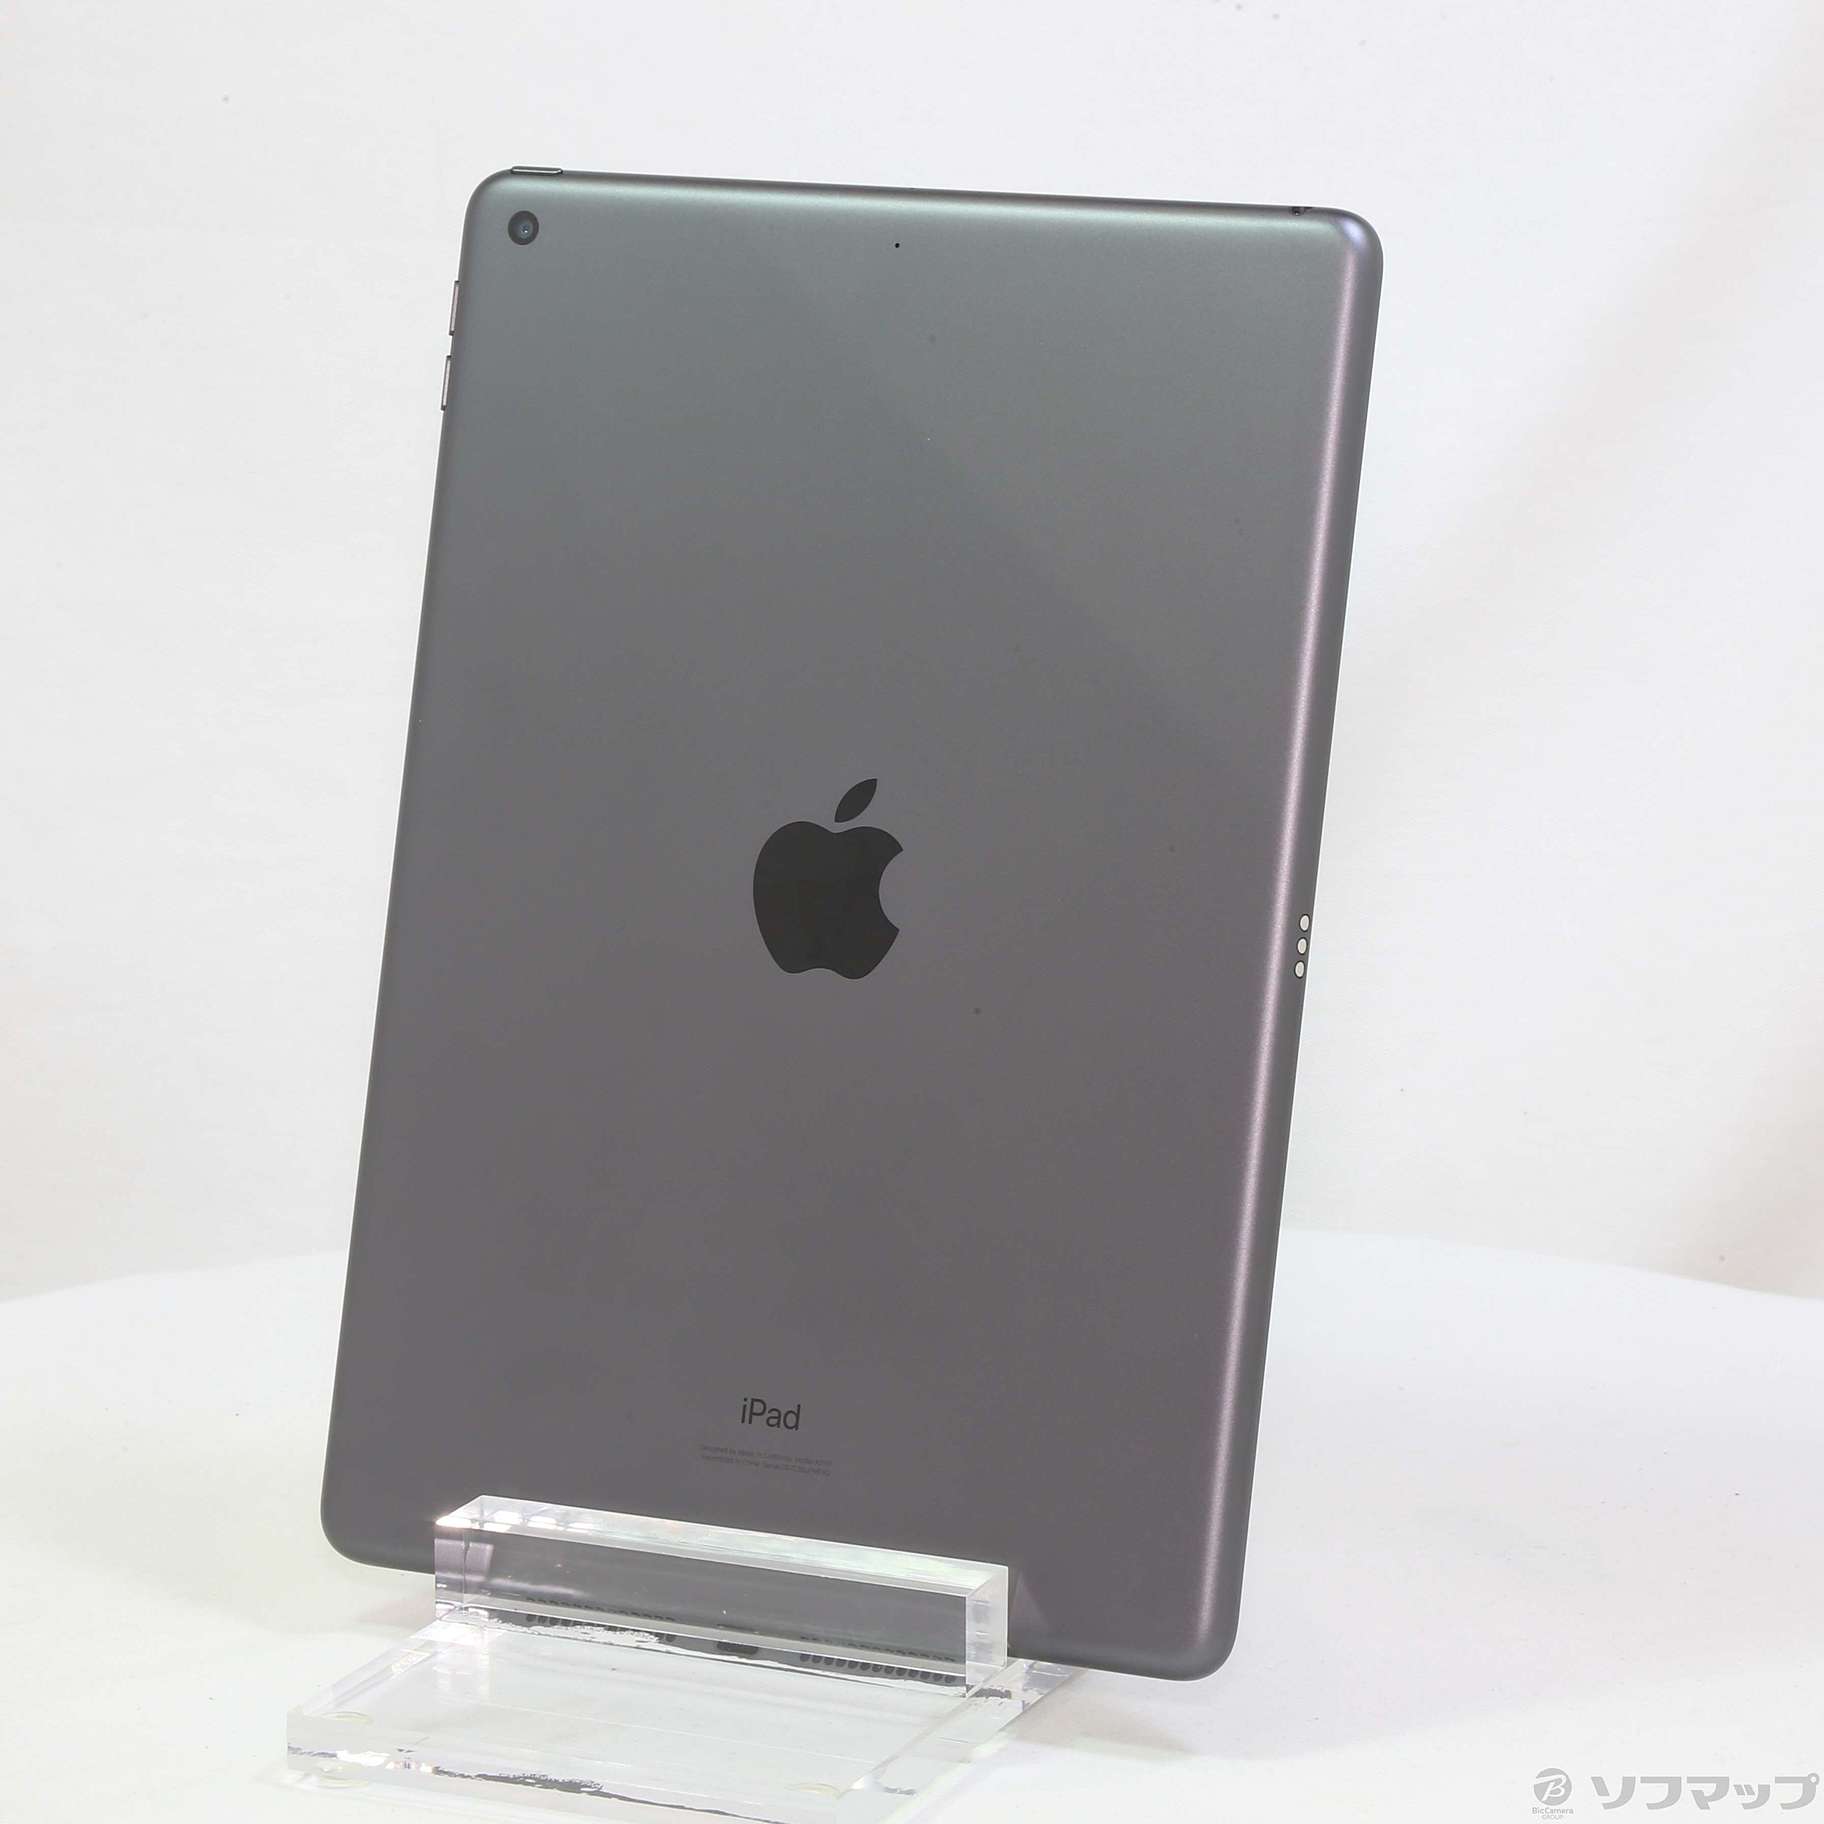 【予約済】アップル iPad 第7世代 WiFi 128GB スペースグレイグレー情報端末シリーズ